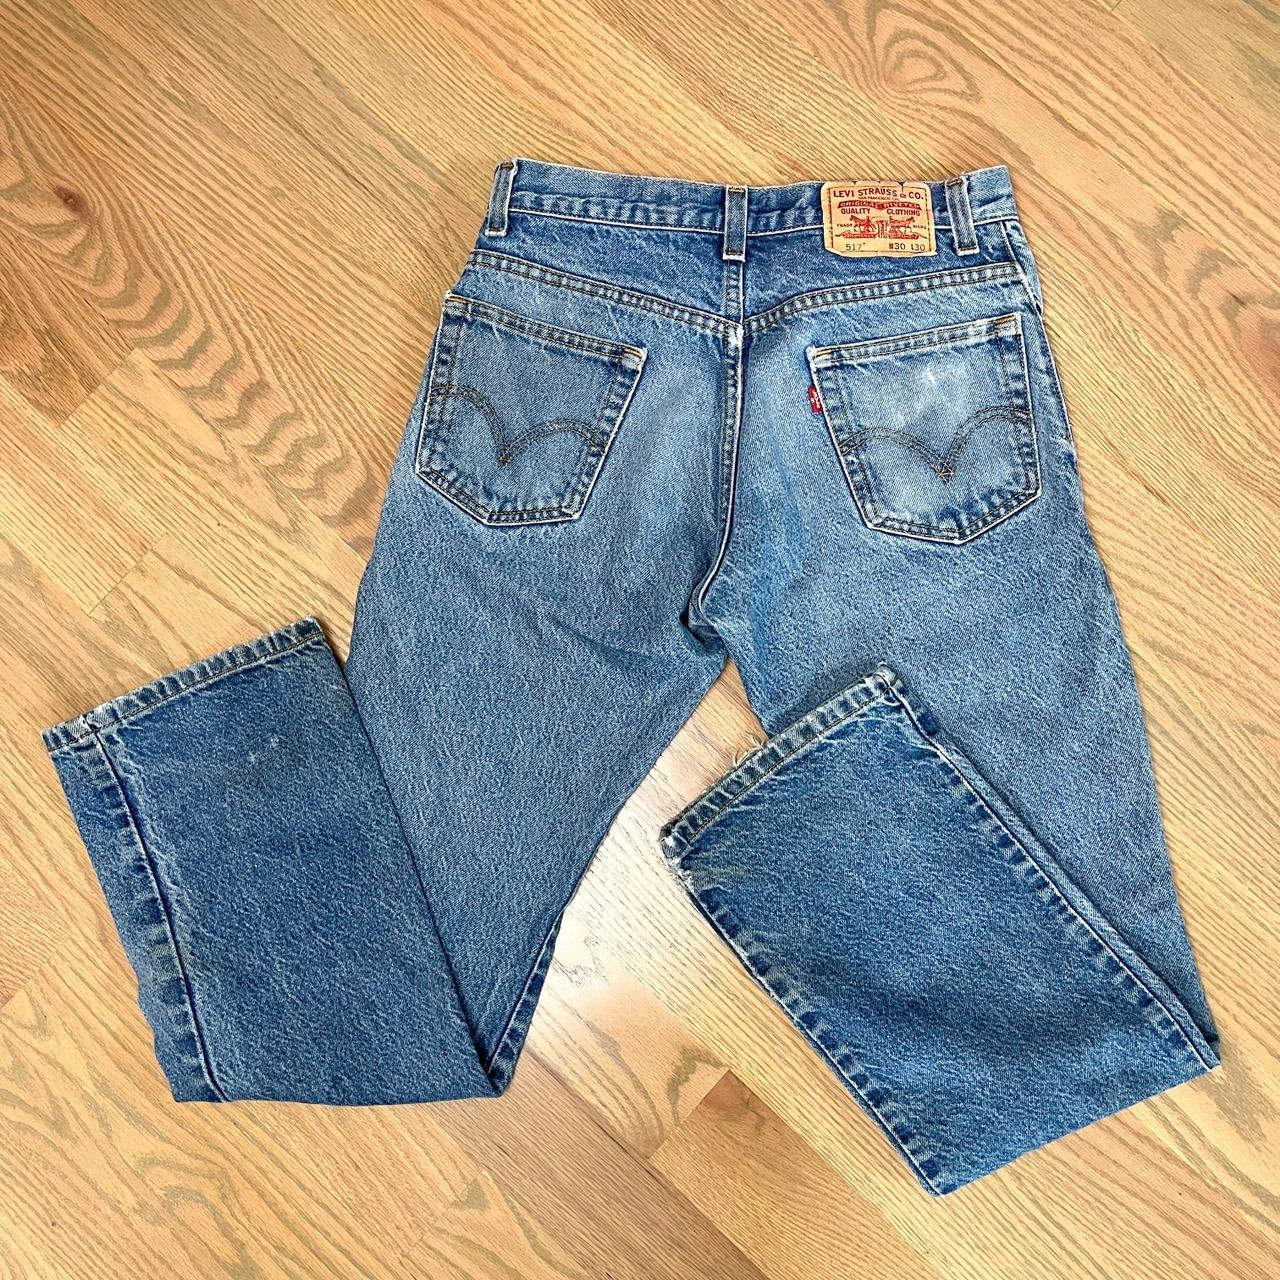 Levi’s bootcut jeans 💙 Waist 30 Length 30 - Depop